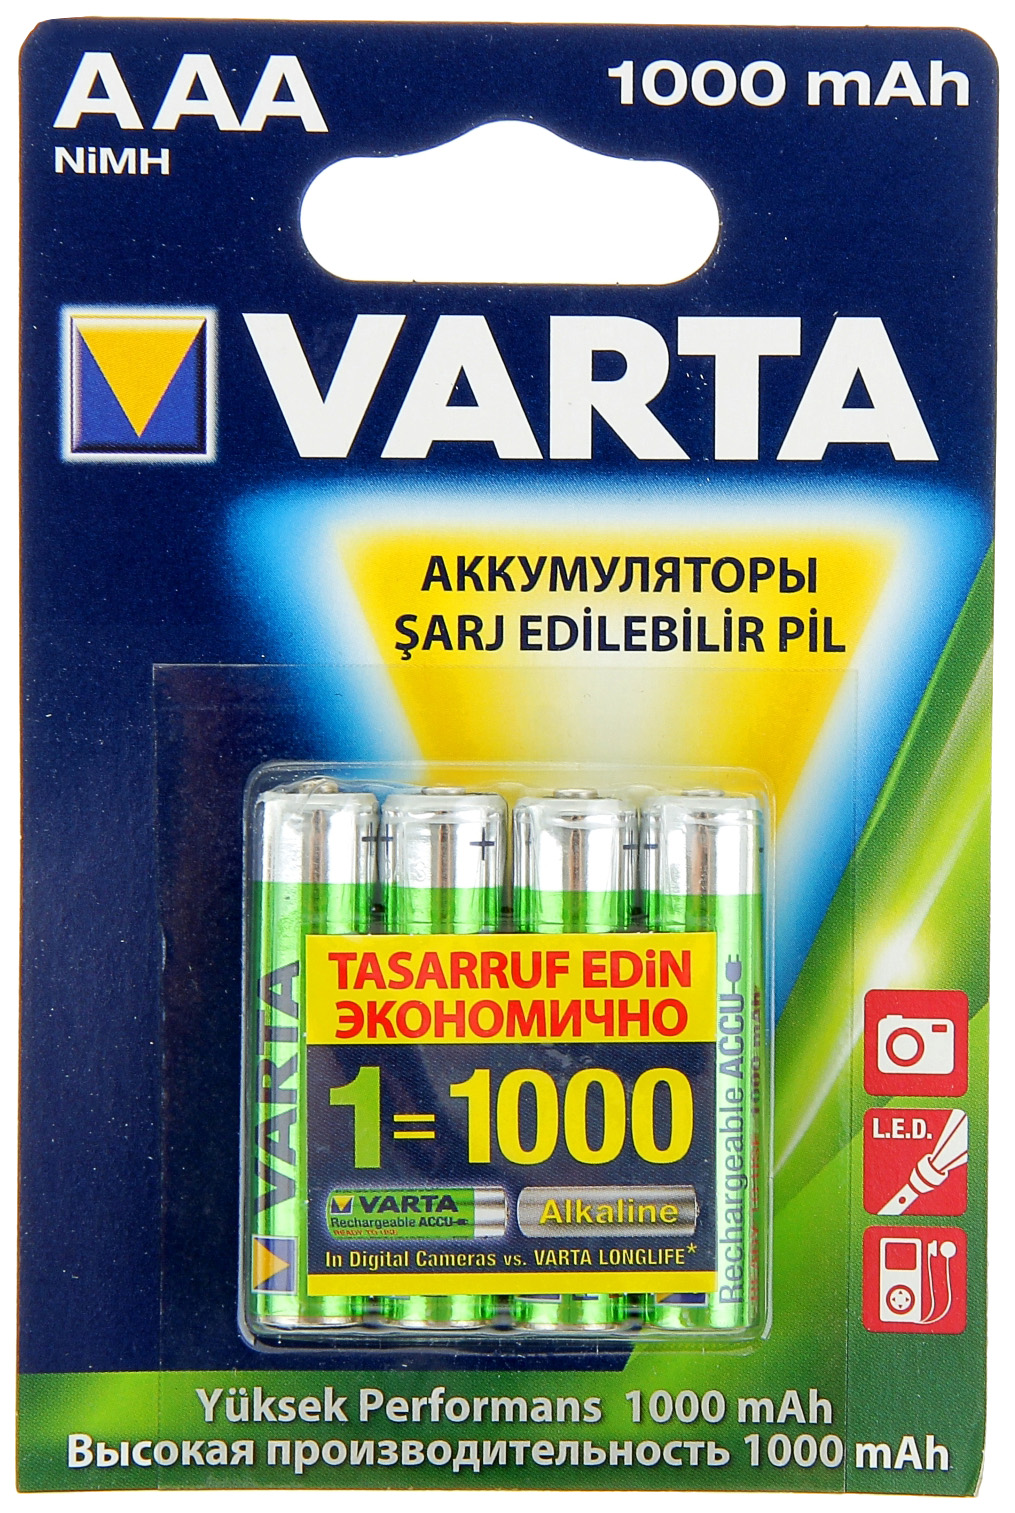 Аккумуляторы VARTA AAA (4 шт.), BAT20001209M аккумуляторы типа aa varta longlife комплект 4 штуки 2100mah